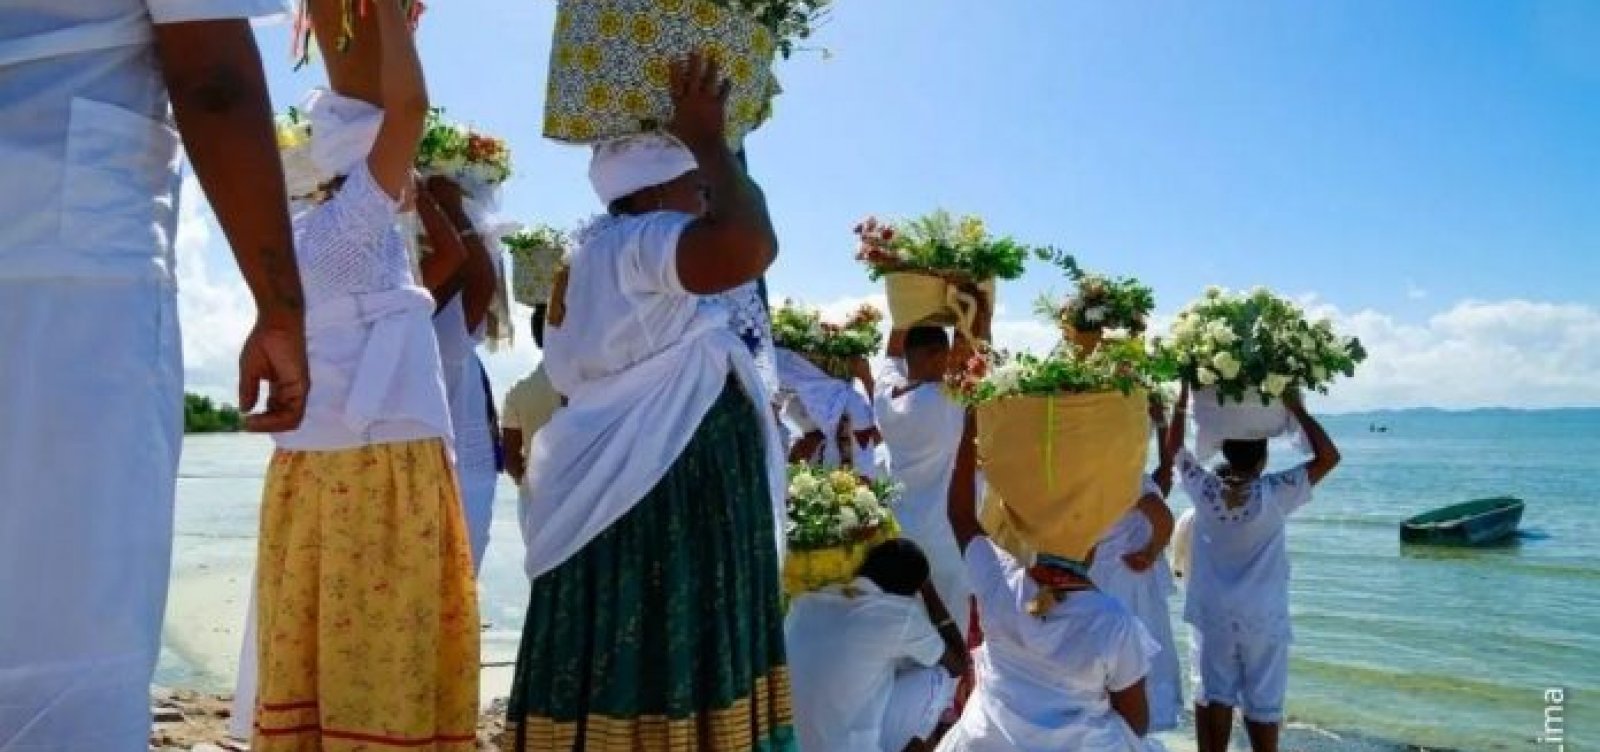 Tradicional festa aos orixás, Bembé do Mercado volta a ser celebrado em Santo Amaro